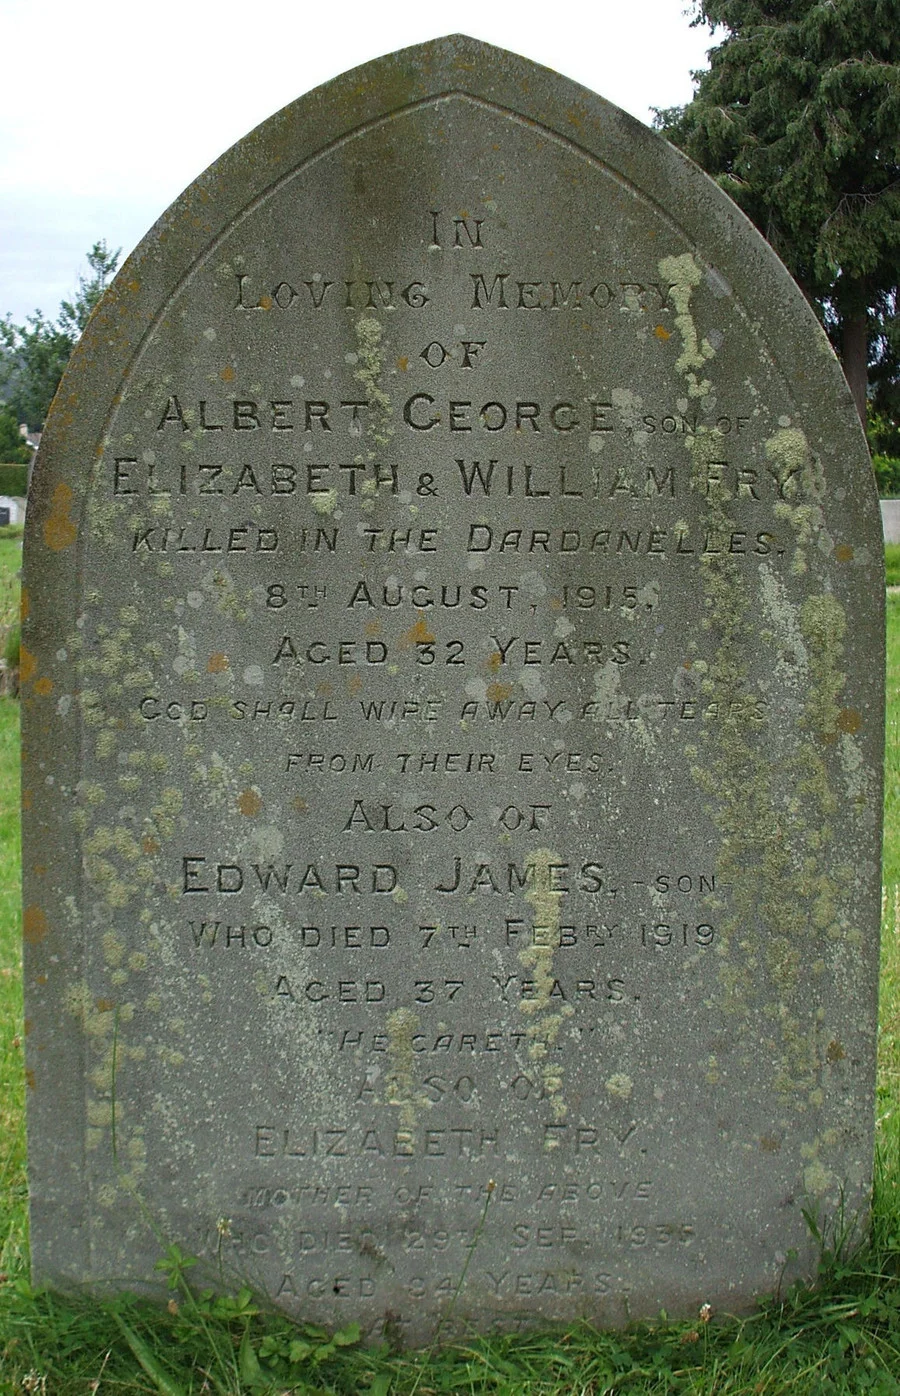 Albert George FRY